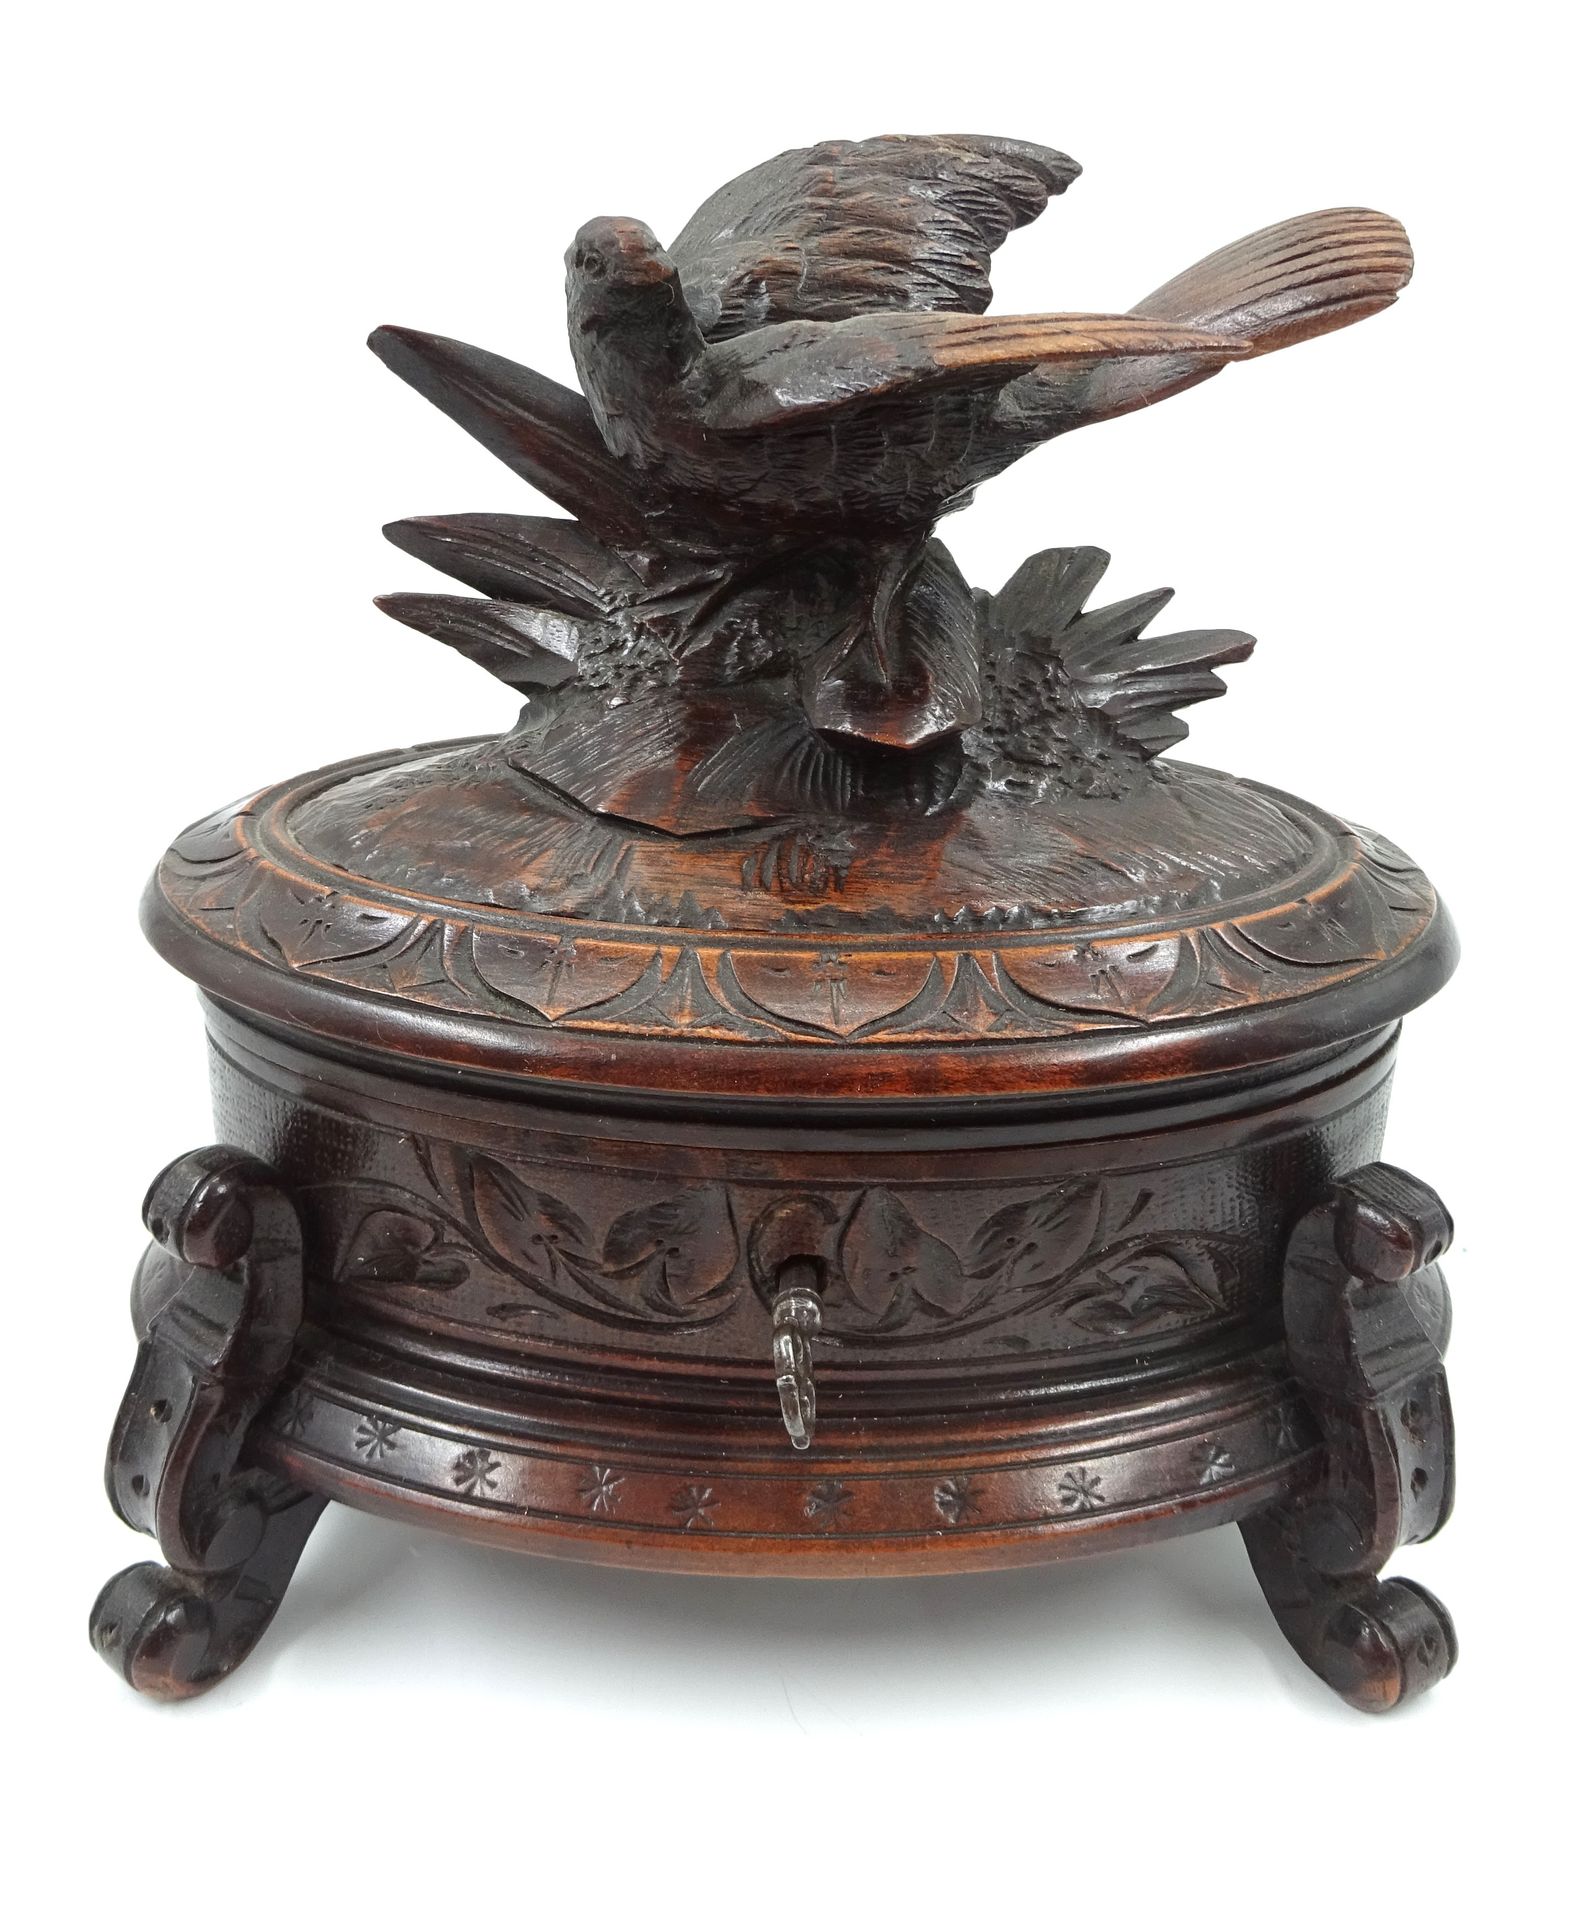 Null 雕刻木盒，顶端有一只鸟。黑森林作品，带钥匙（两只脚粘在一起）。16 x 16 x 11 厘米。